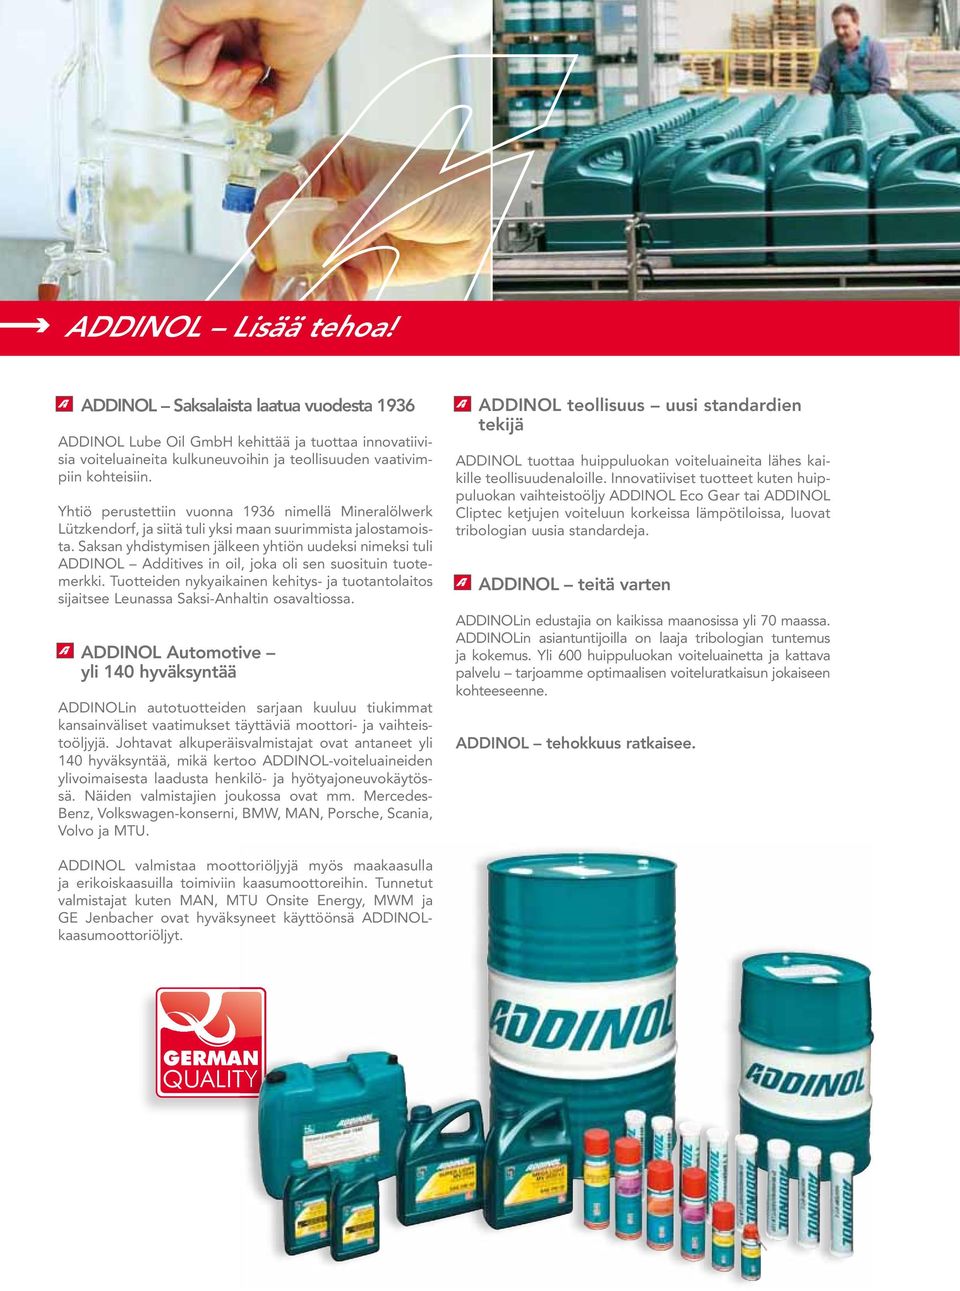 Saksan yhdistymisen jälkeen yhtiön uudeksi nimeksi tuli Additives in oil, joka oli sen suosituin tuotemerkki.